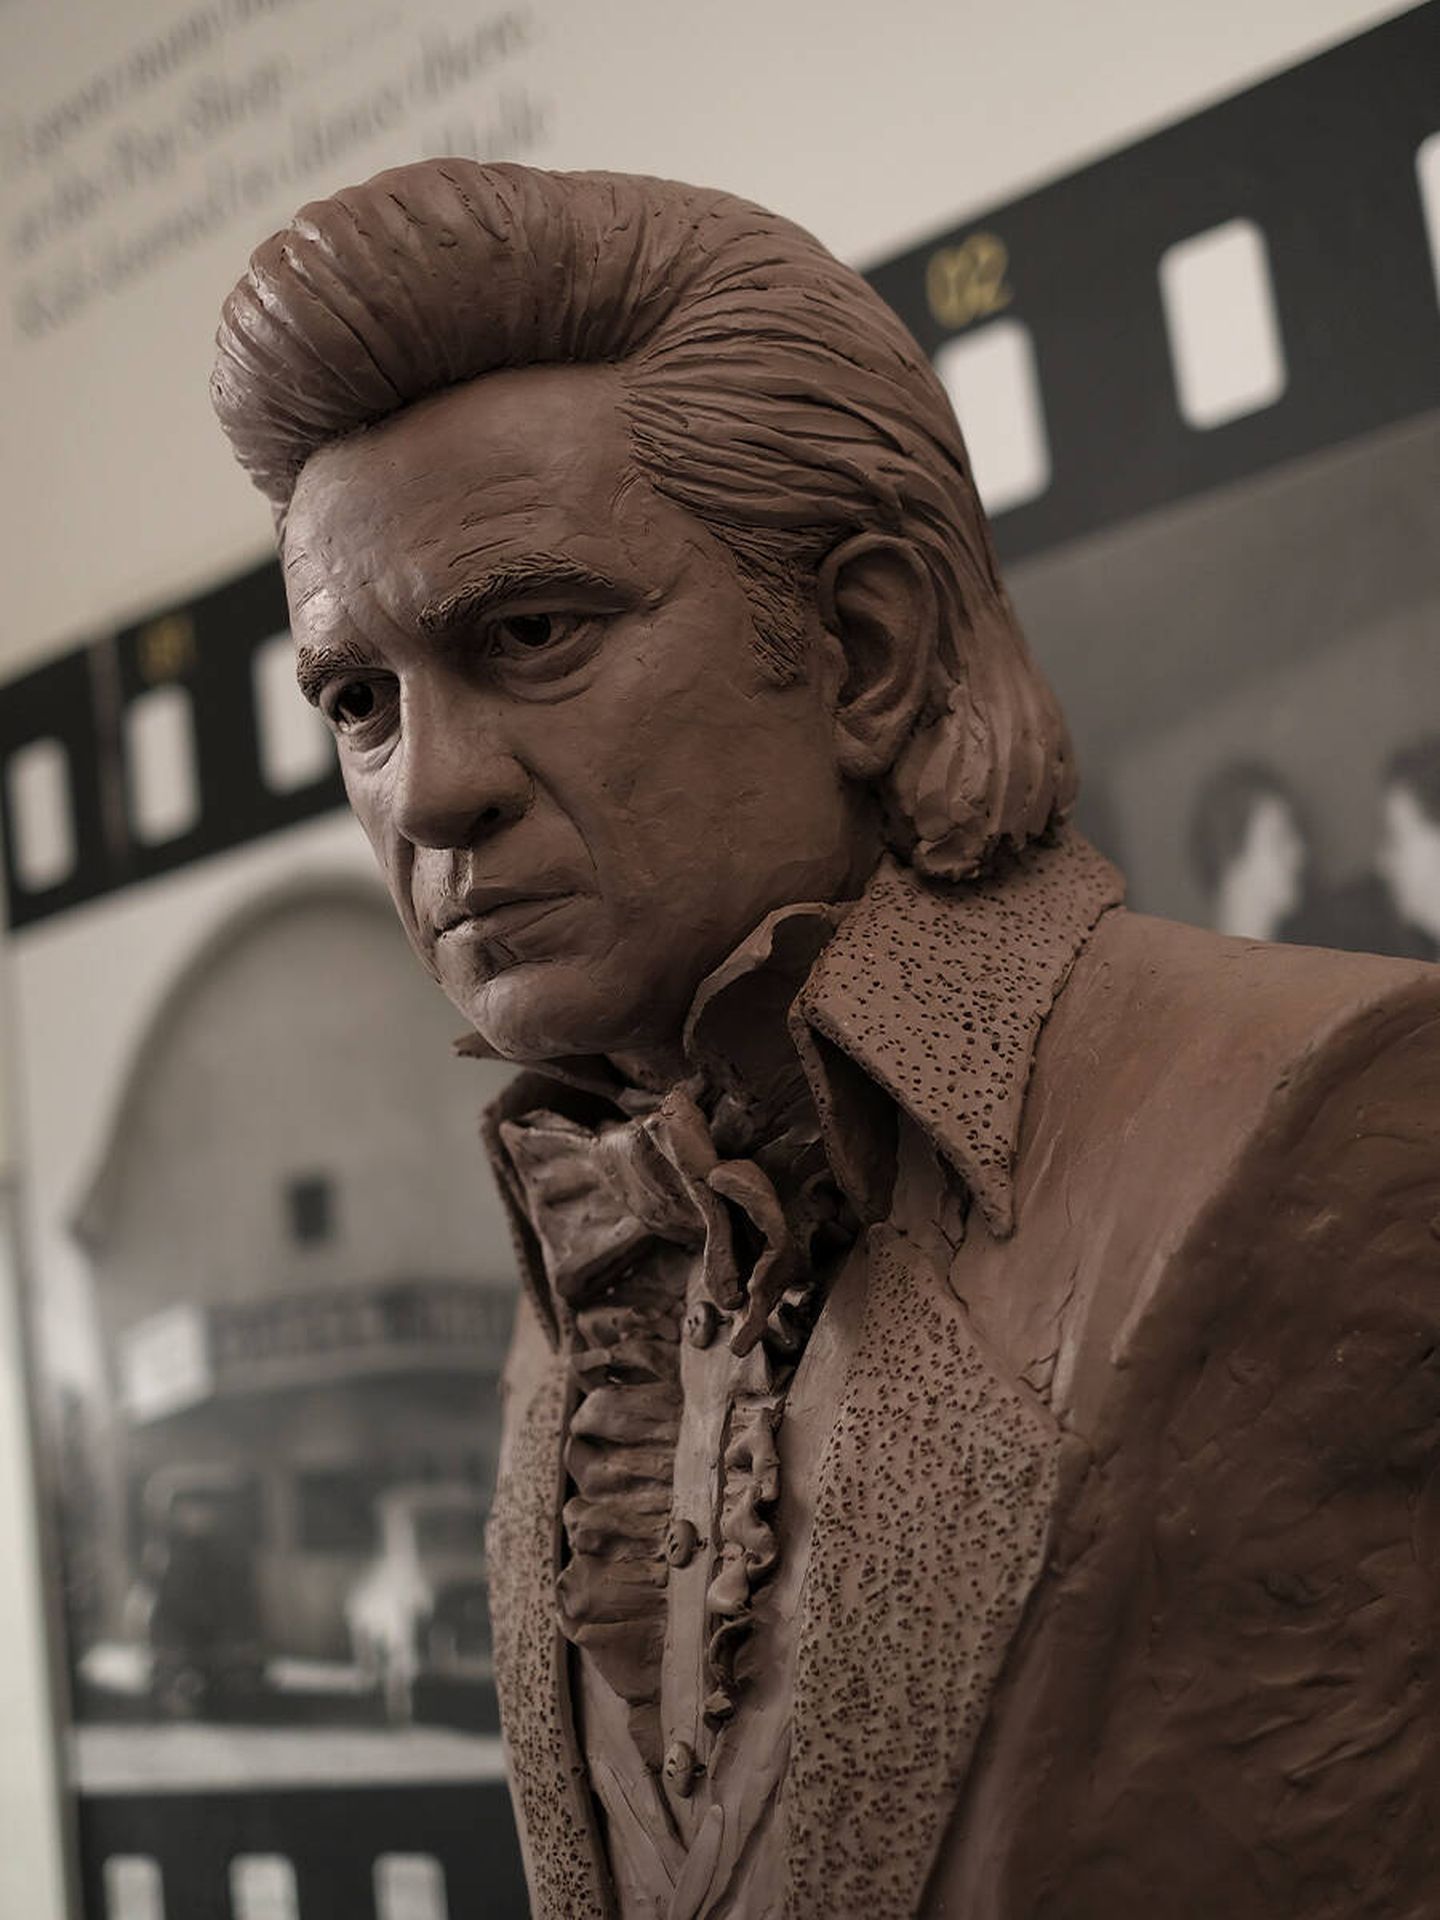 Detalle del busto de Johnny Cash realizado por Kevin Kresse en el museo de la colonia de Dyess. (J. García)